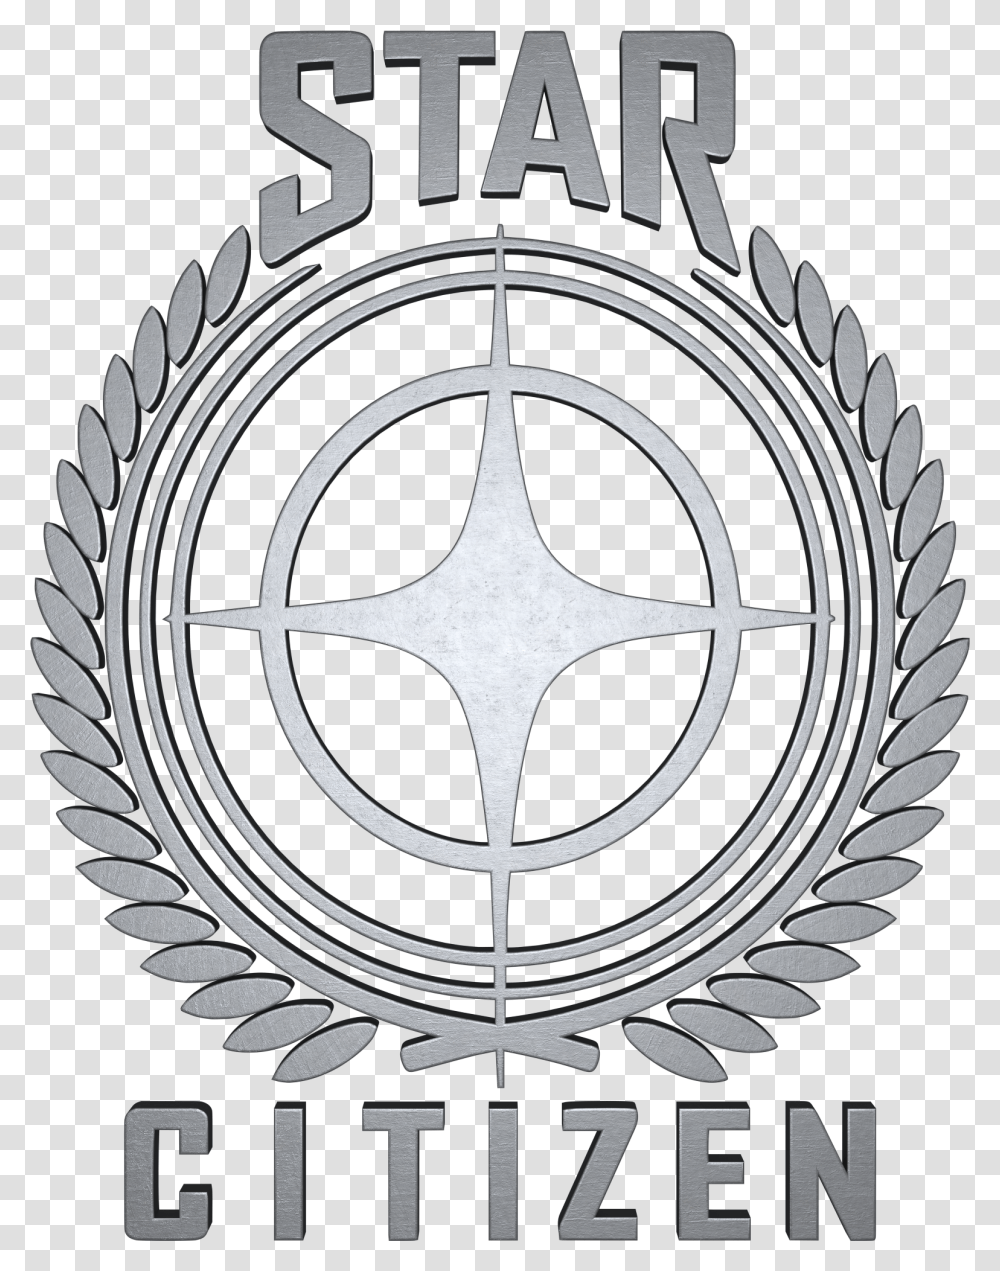 Star Citizen Star Citizen 3d Logo, Emblem, Poster, Advertisement Transparent Png